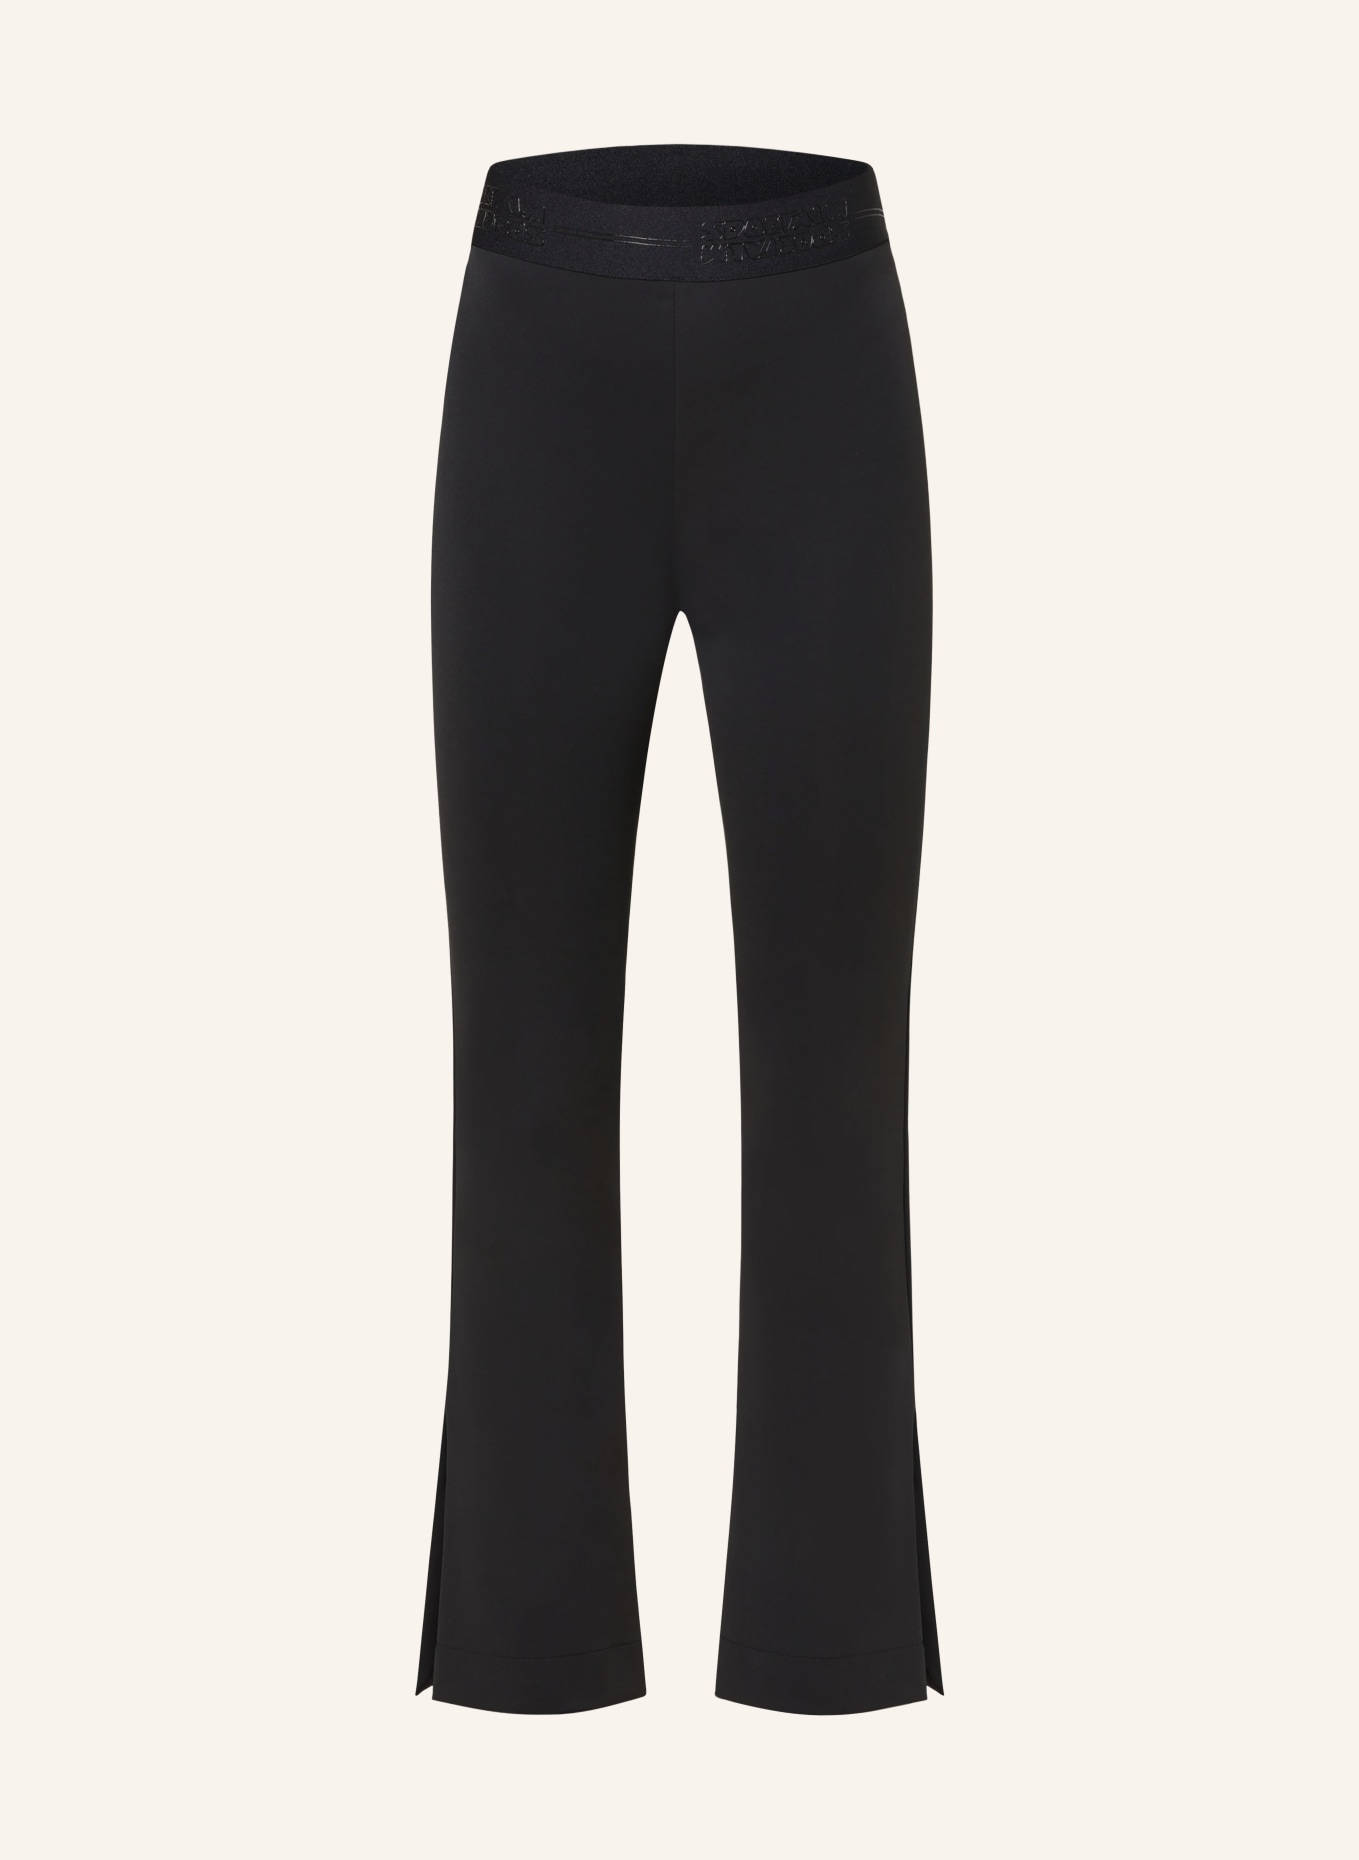 SPORTALM Trousers, Color: BLACK (Image 1)